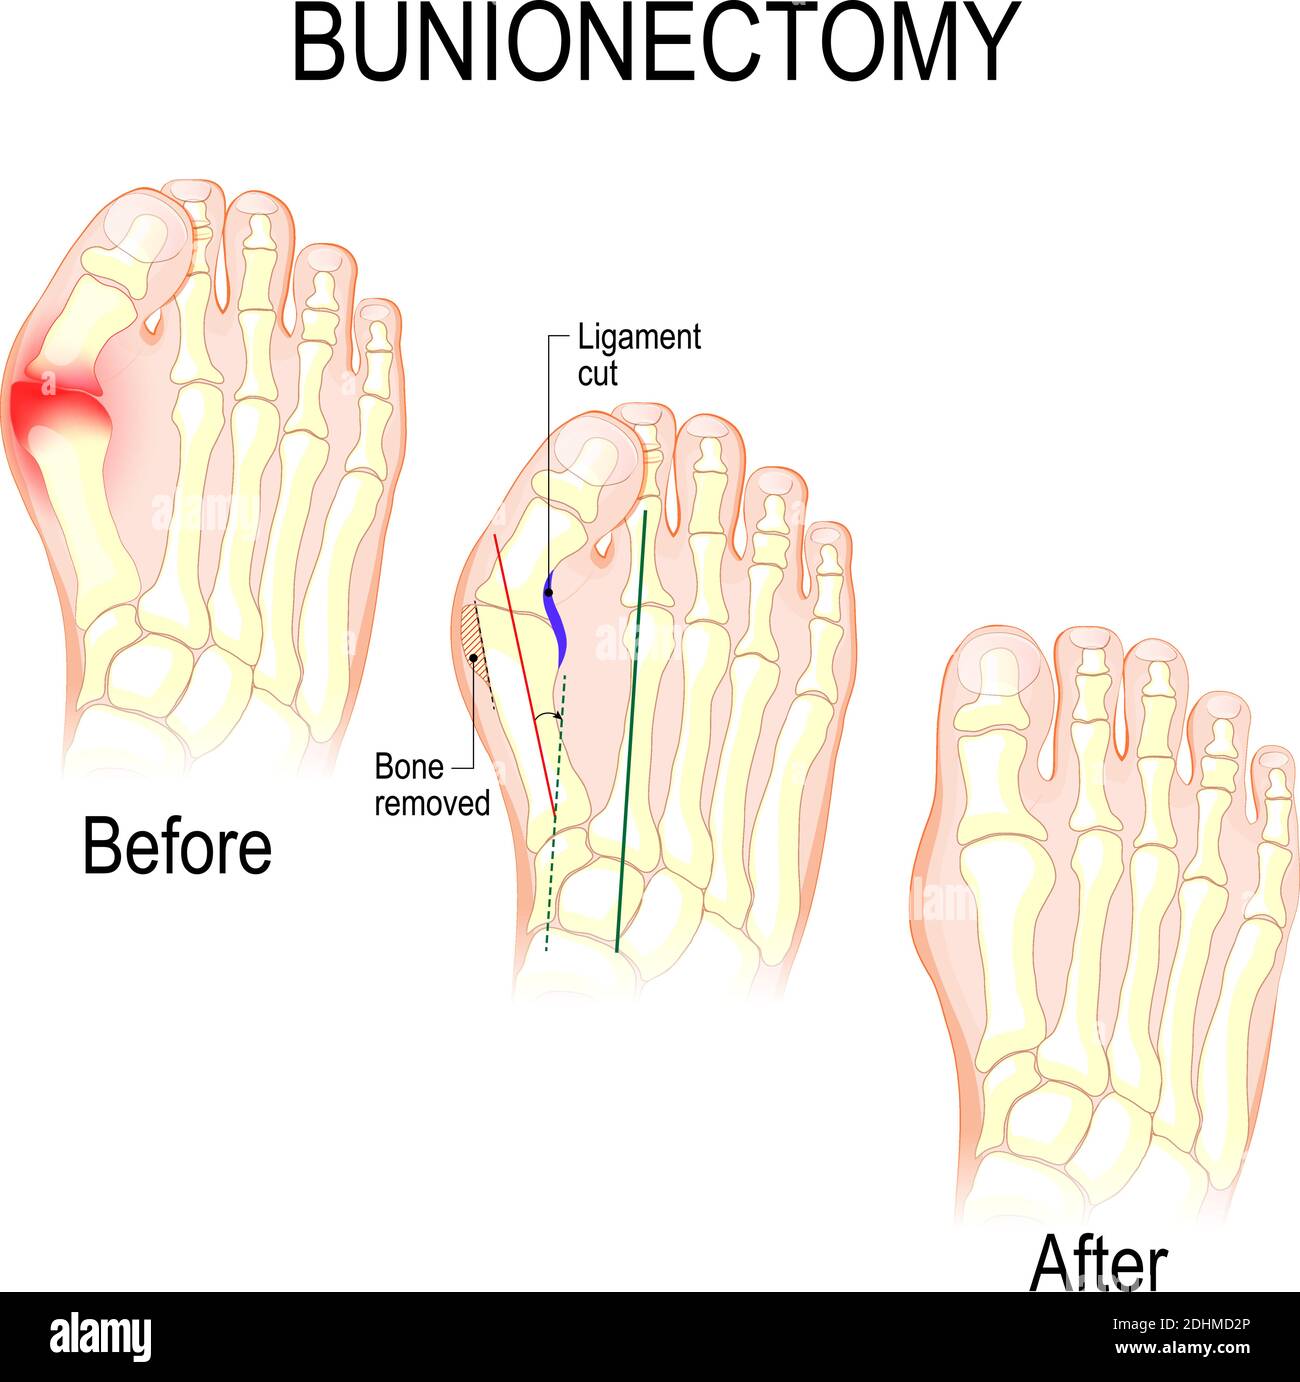 La bunionectomía es un procedimiento para corregir patologías y deformidades de la articulación que conecta el dedo gordo del pie con el pie. Antes y después de la cirugía Ilustración del Vector